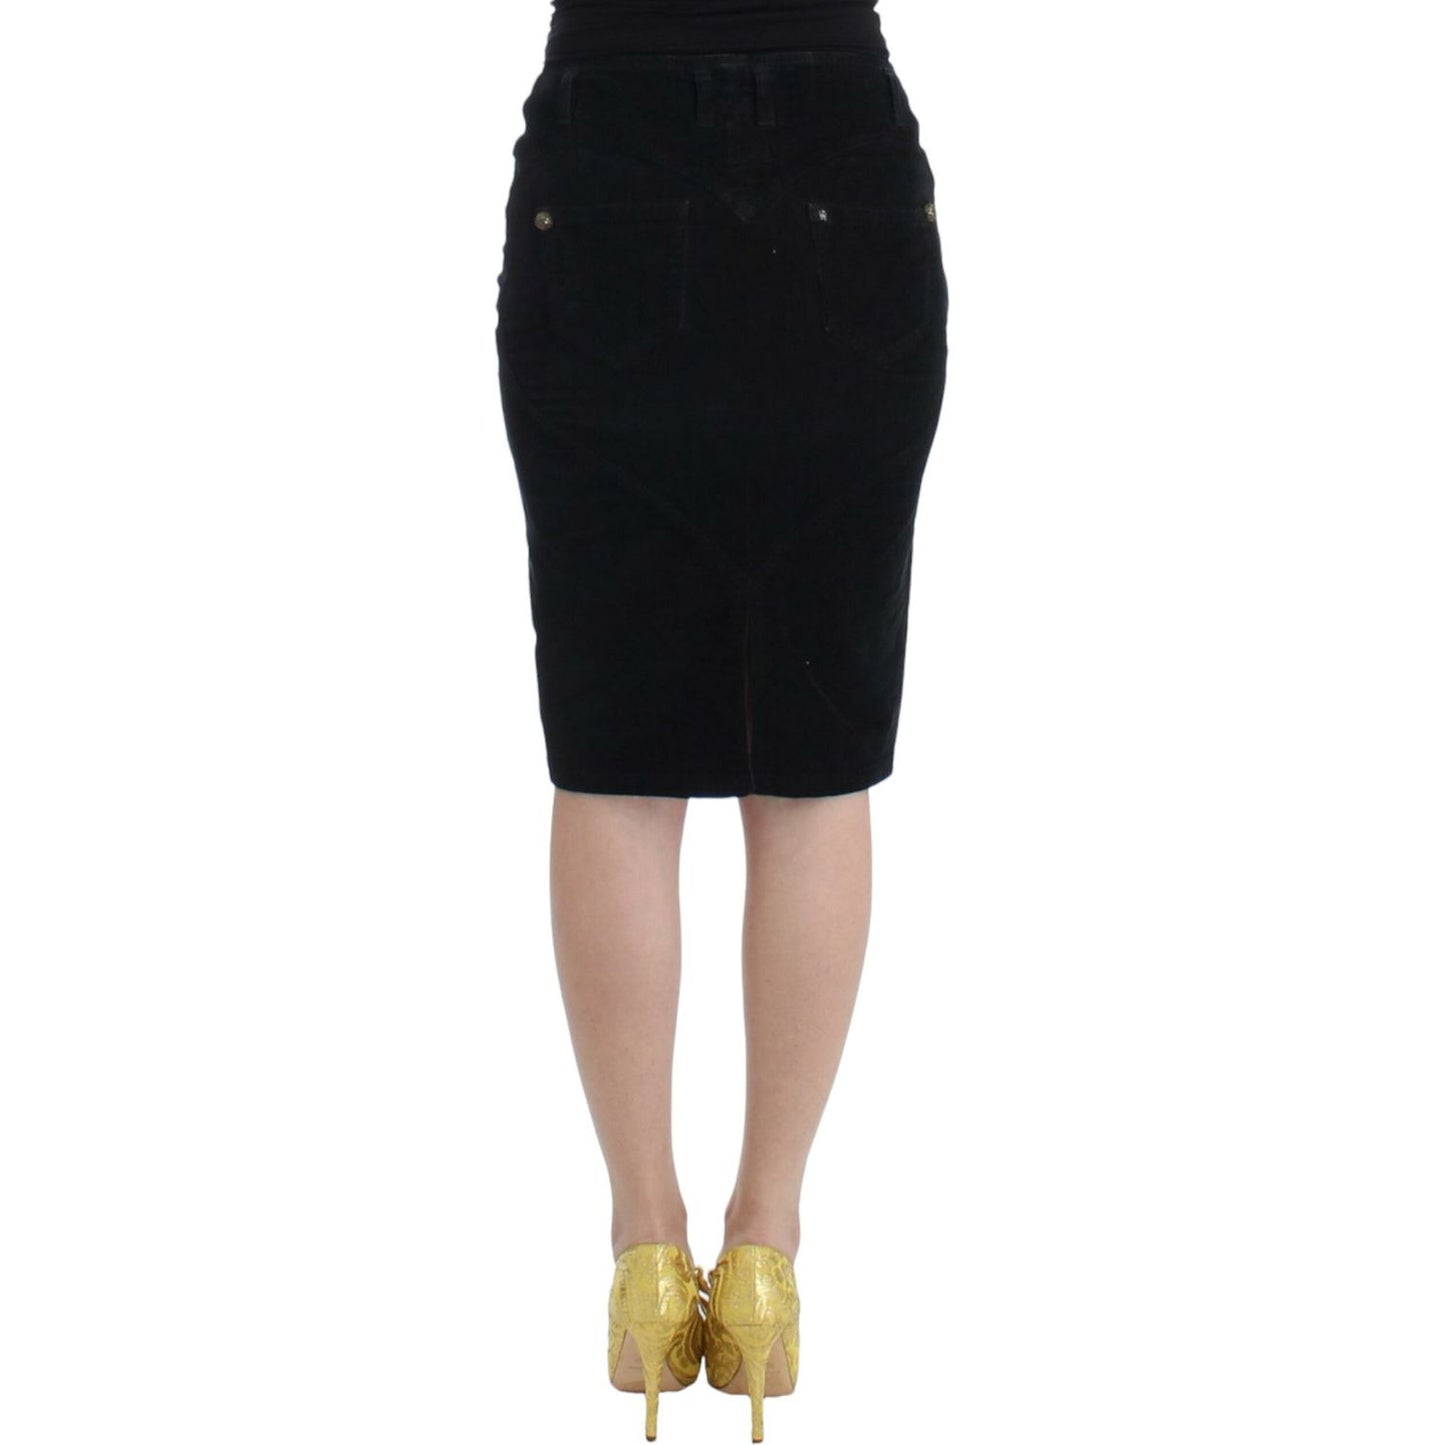 Cavalli Elegant Black Pencil Skirt for Sophisticated Style black-corduroy-pencil-skirt 9195-black-corduroy-pencil-skirt-2-scaled-de7cd934-d98.jpg